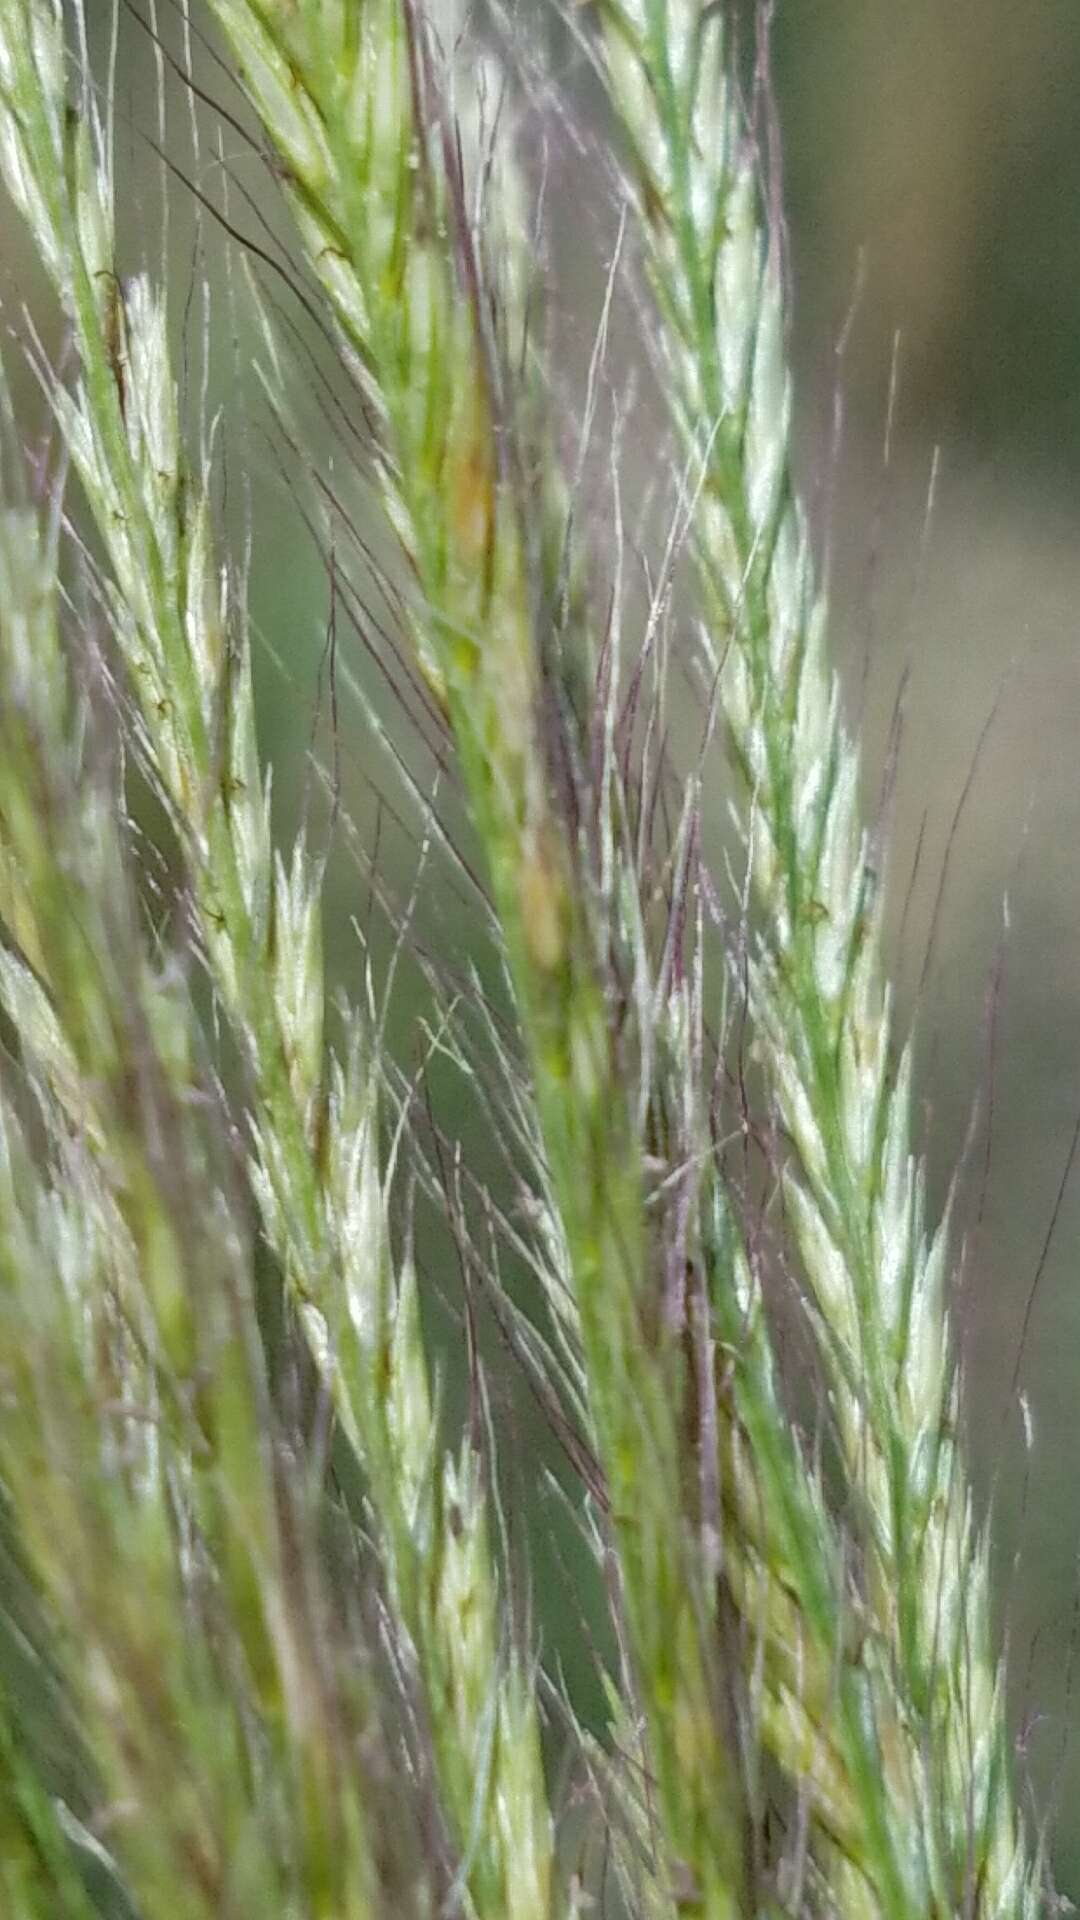 Image of false Rhodes grass